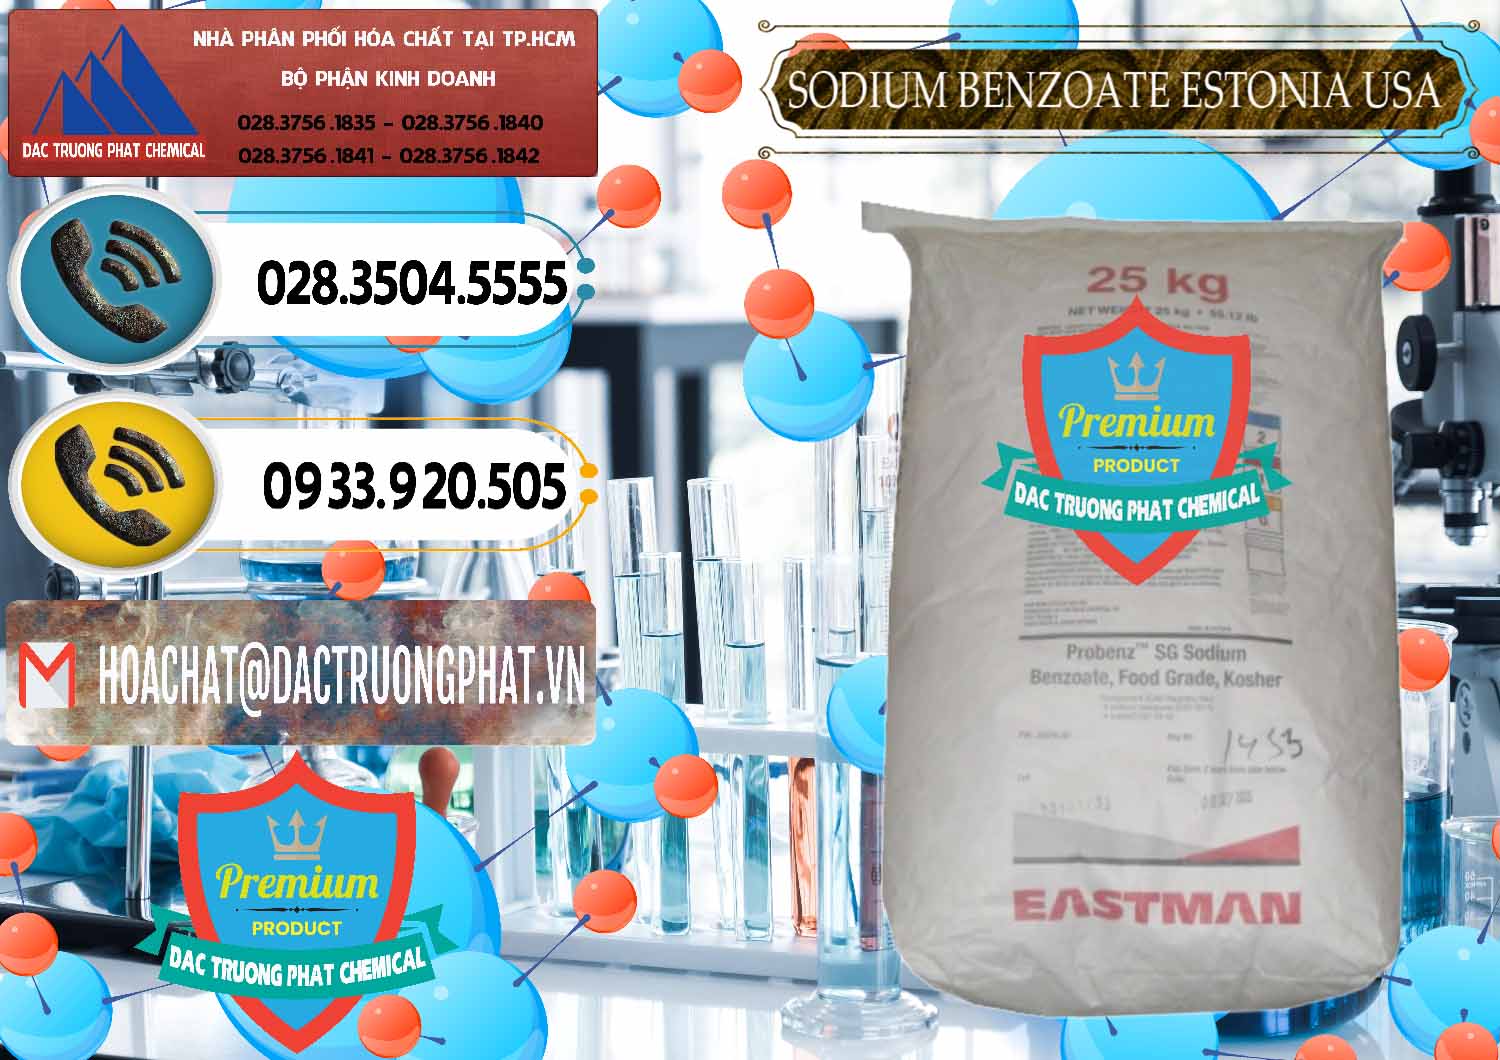 Cty chuyên nhập khẩu ( bán ) Sodium Benzoate - Mốc Bột Estonia Mỹ USA - 0468 - Bán và phân phối hóa chất tại TP.HCM - hoachatdetnhuom.vn